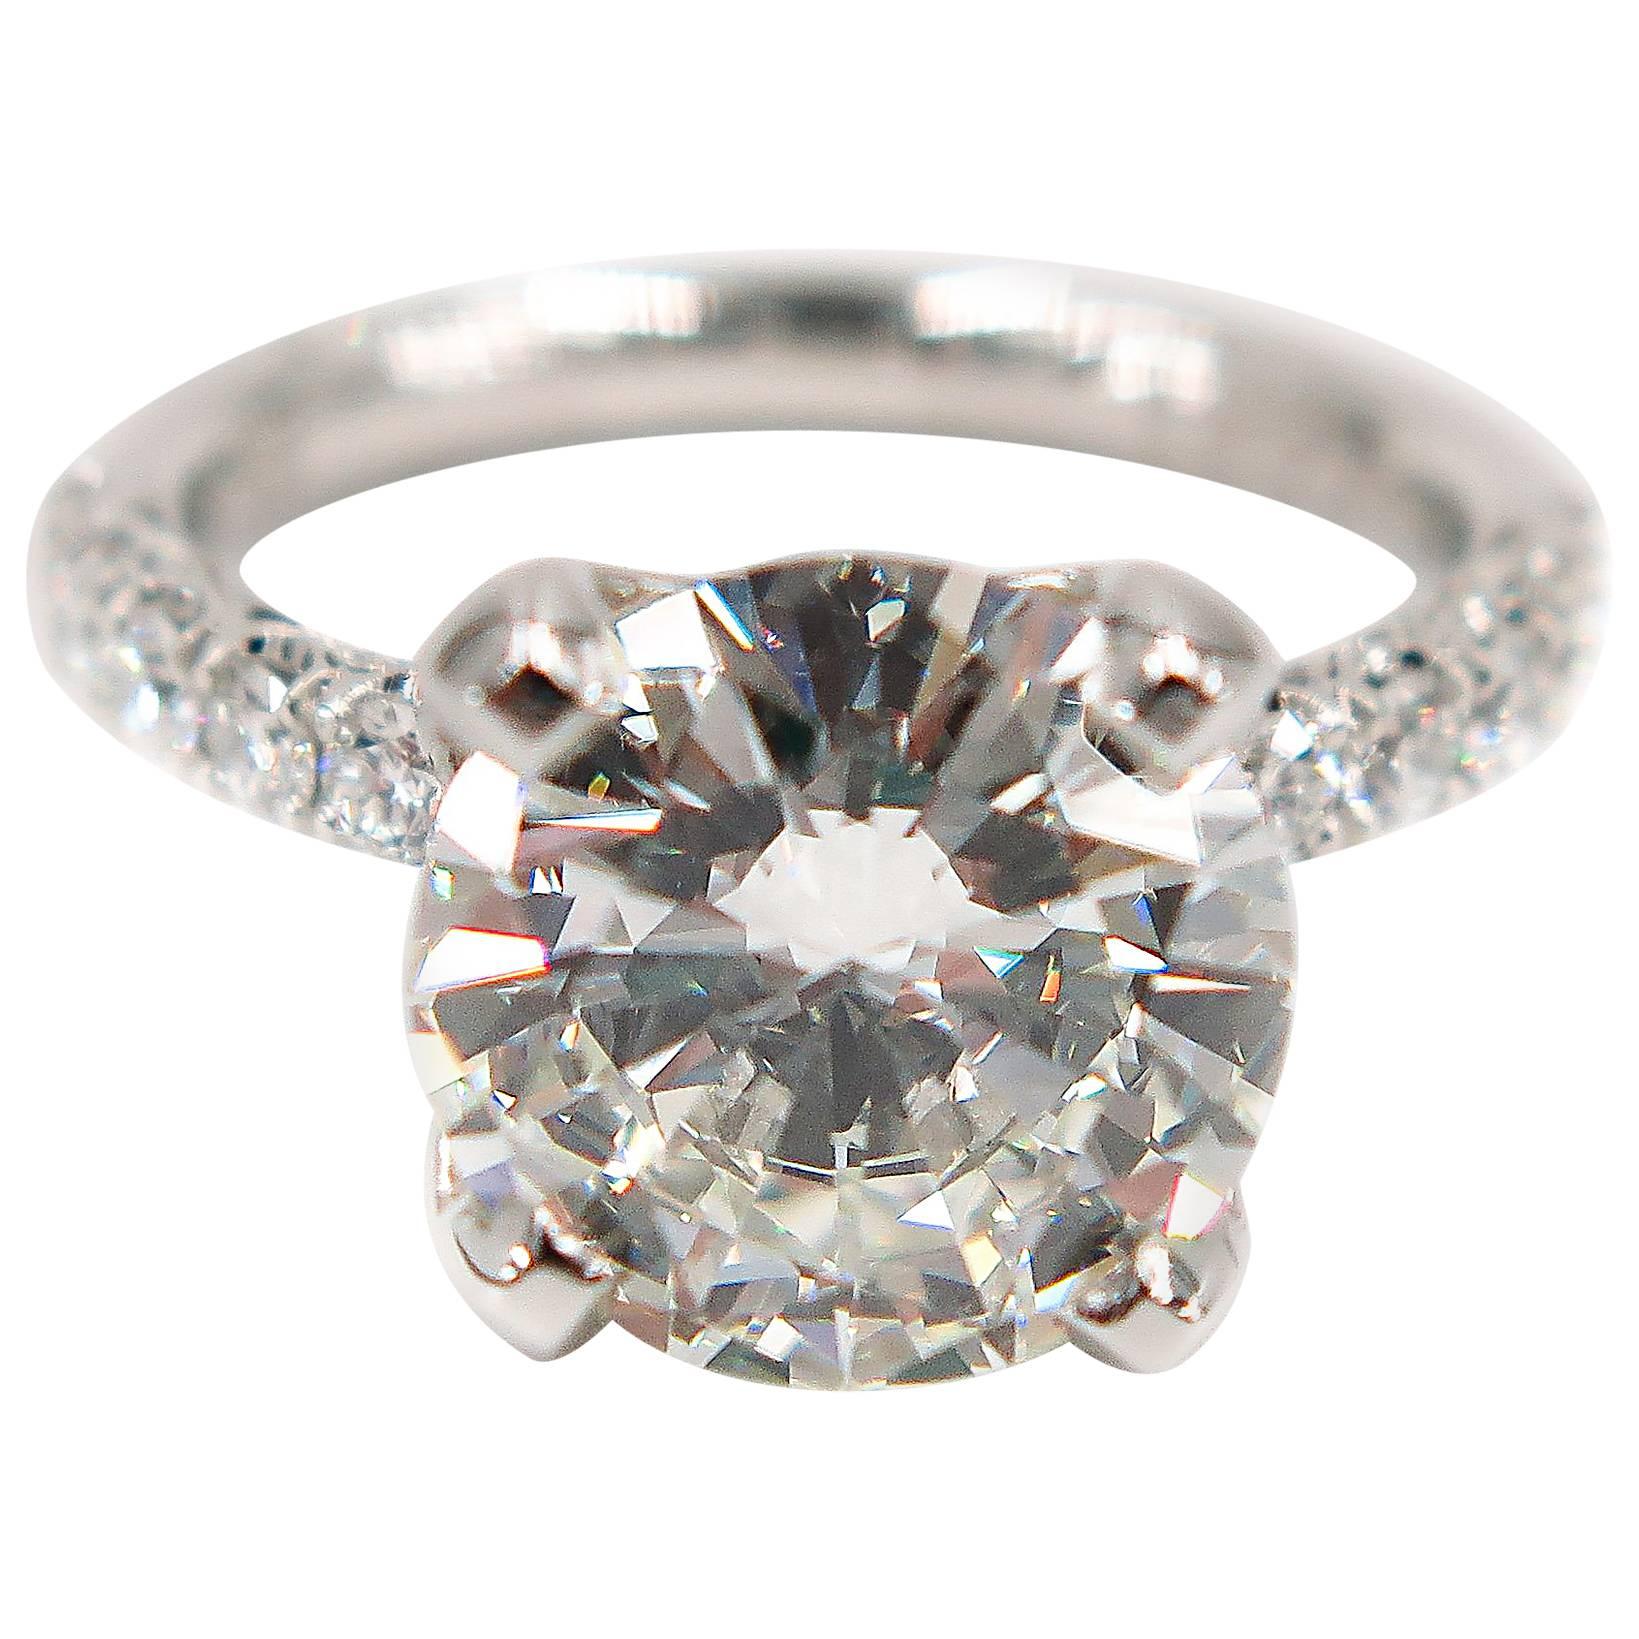 GIA Certified 4.07 Carat Round Diamond Engagement Ring